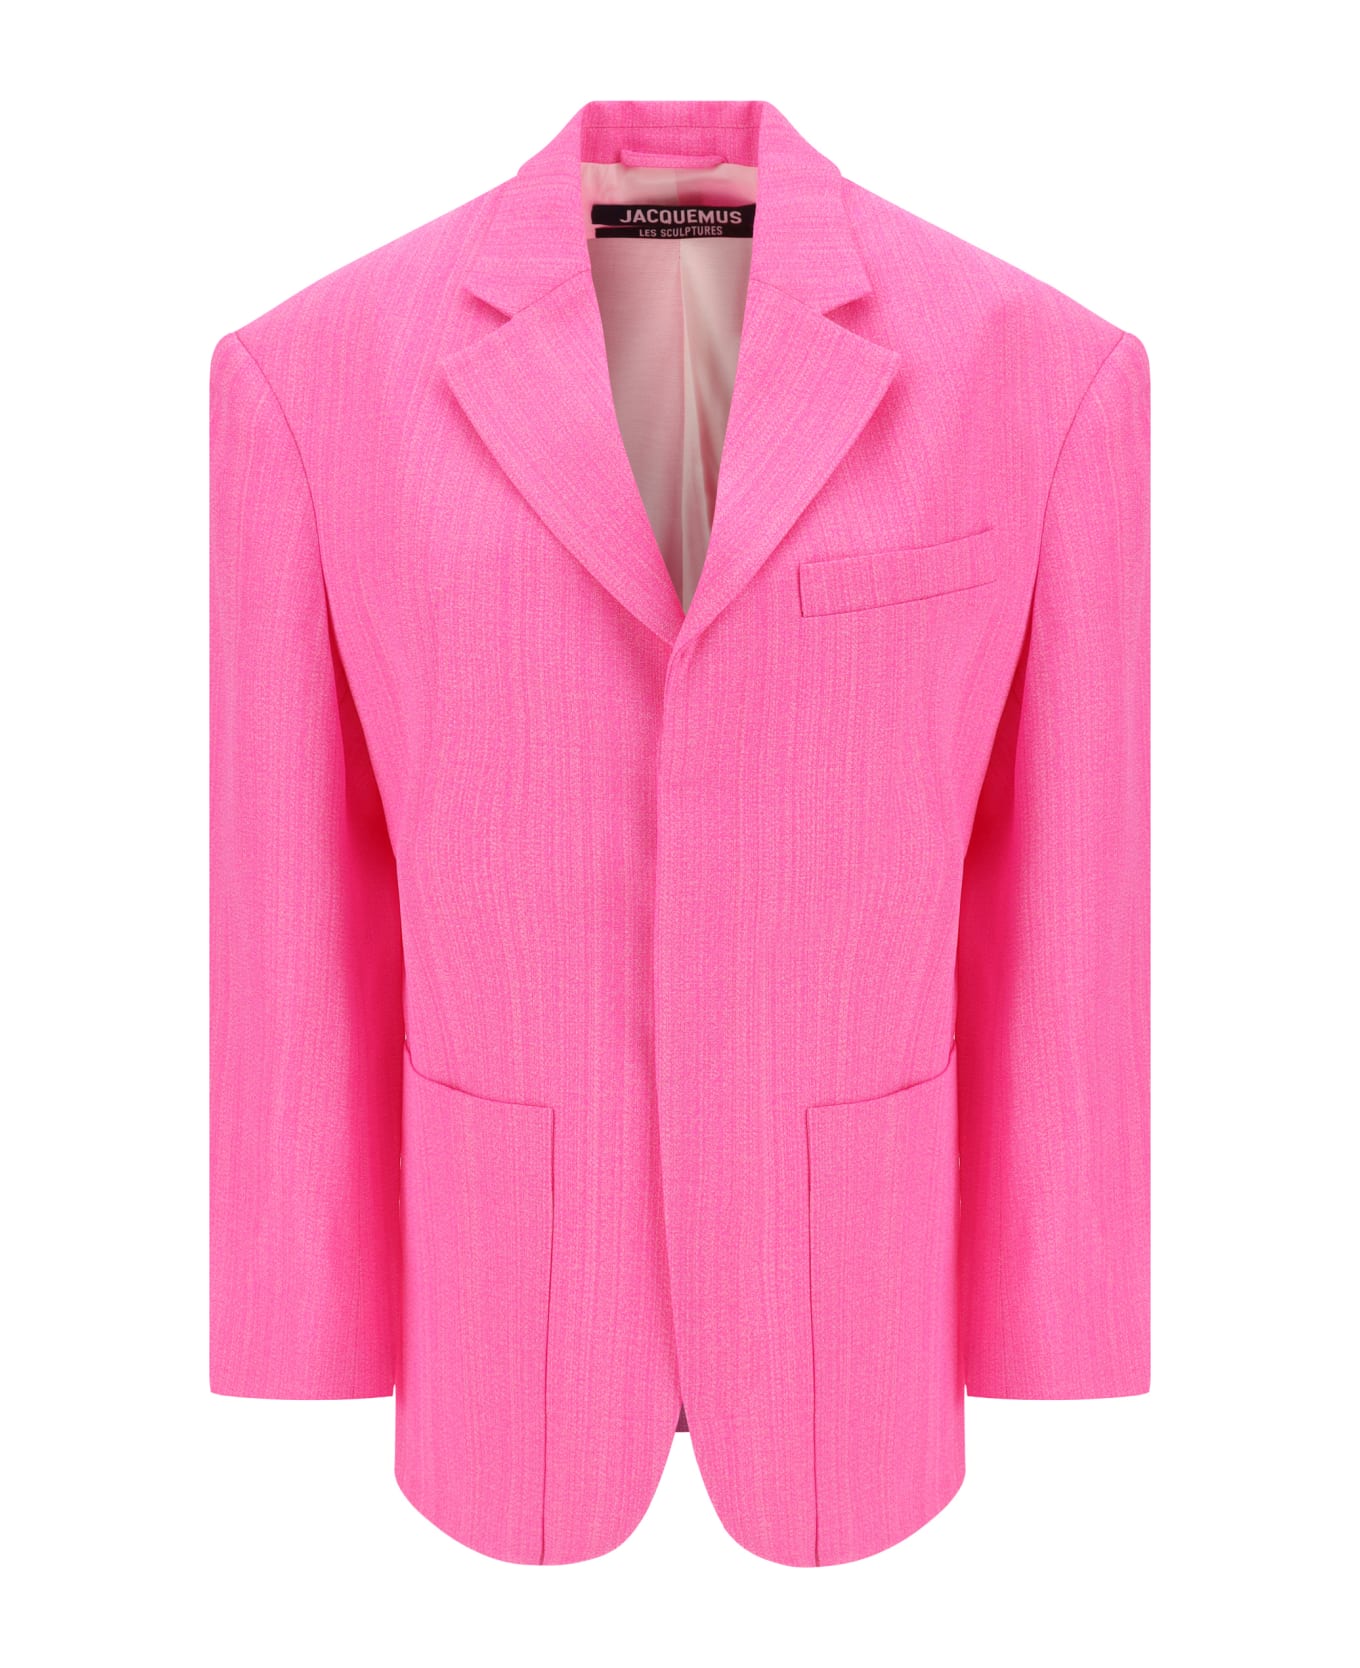 Jacquemus Blazer Jacket - Pink